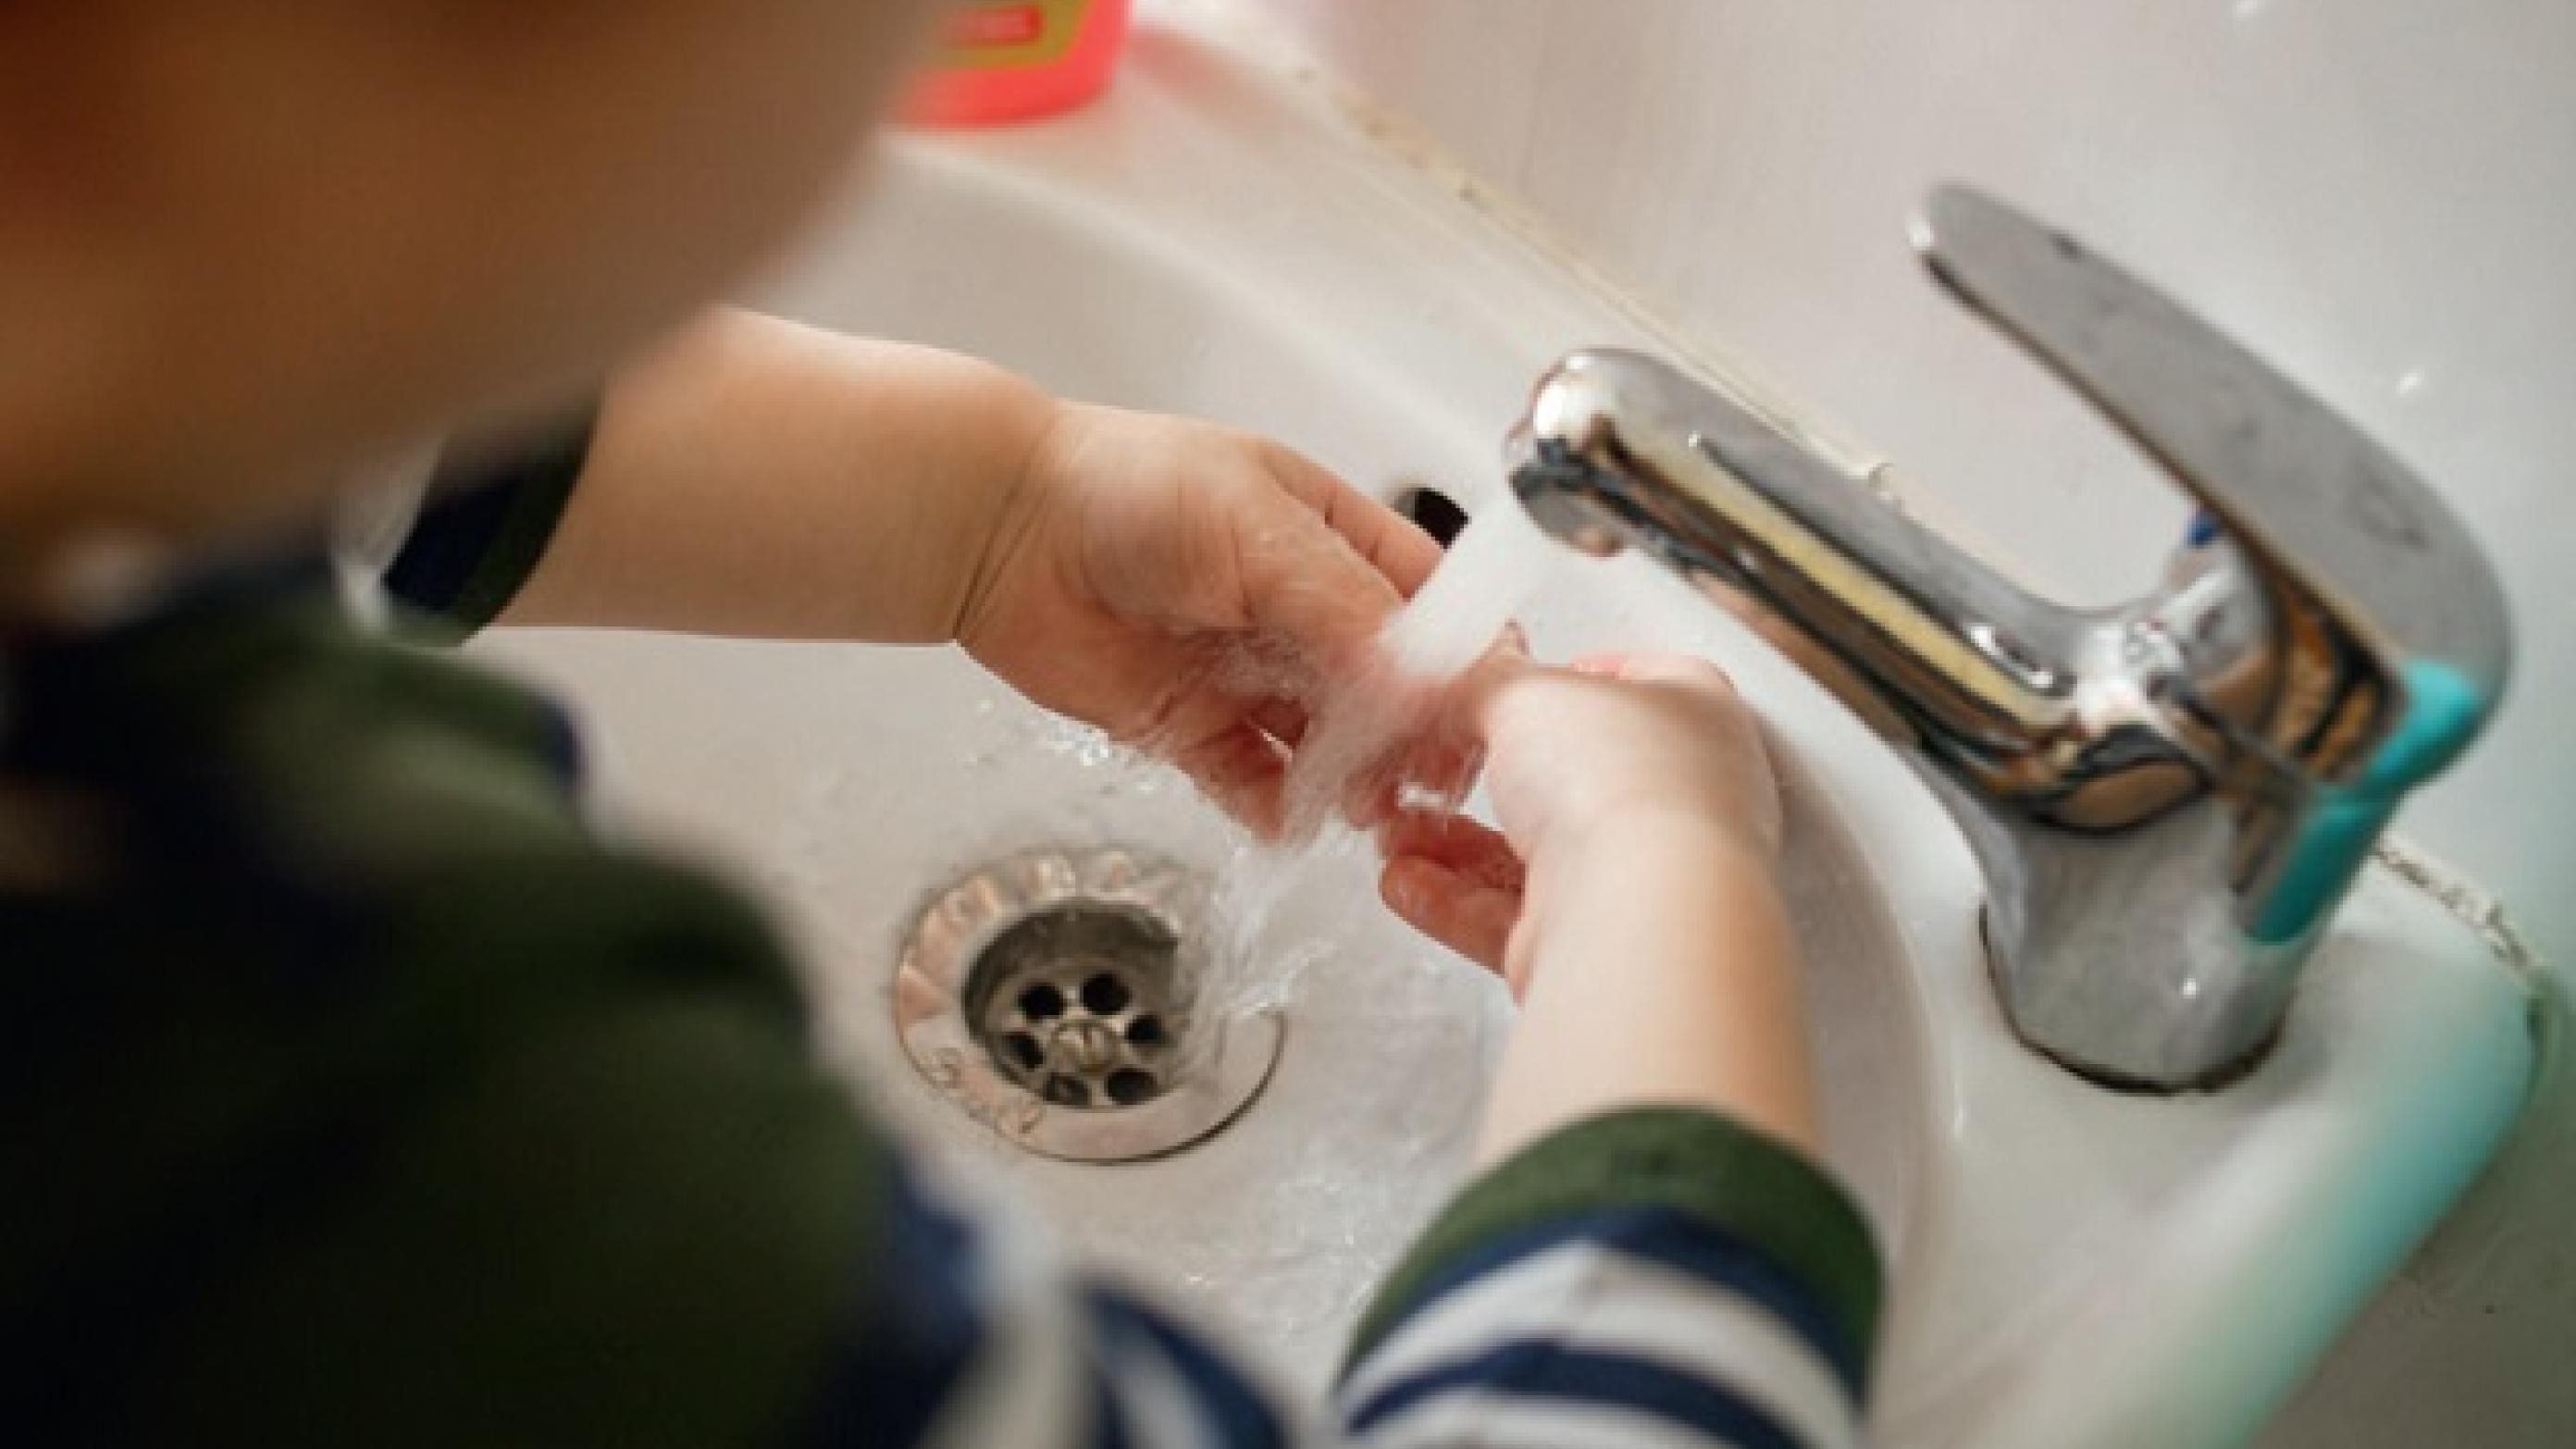 © Hyppig og ritualiserethåndvask ses ofte hos børn og unge med obsessiv kompulsiv lidelse.